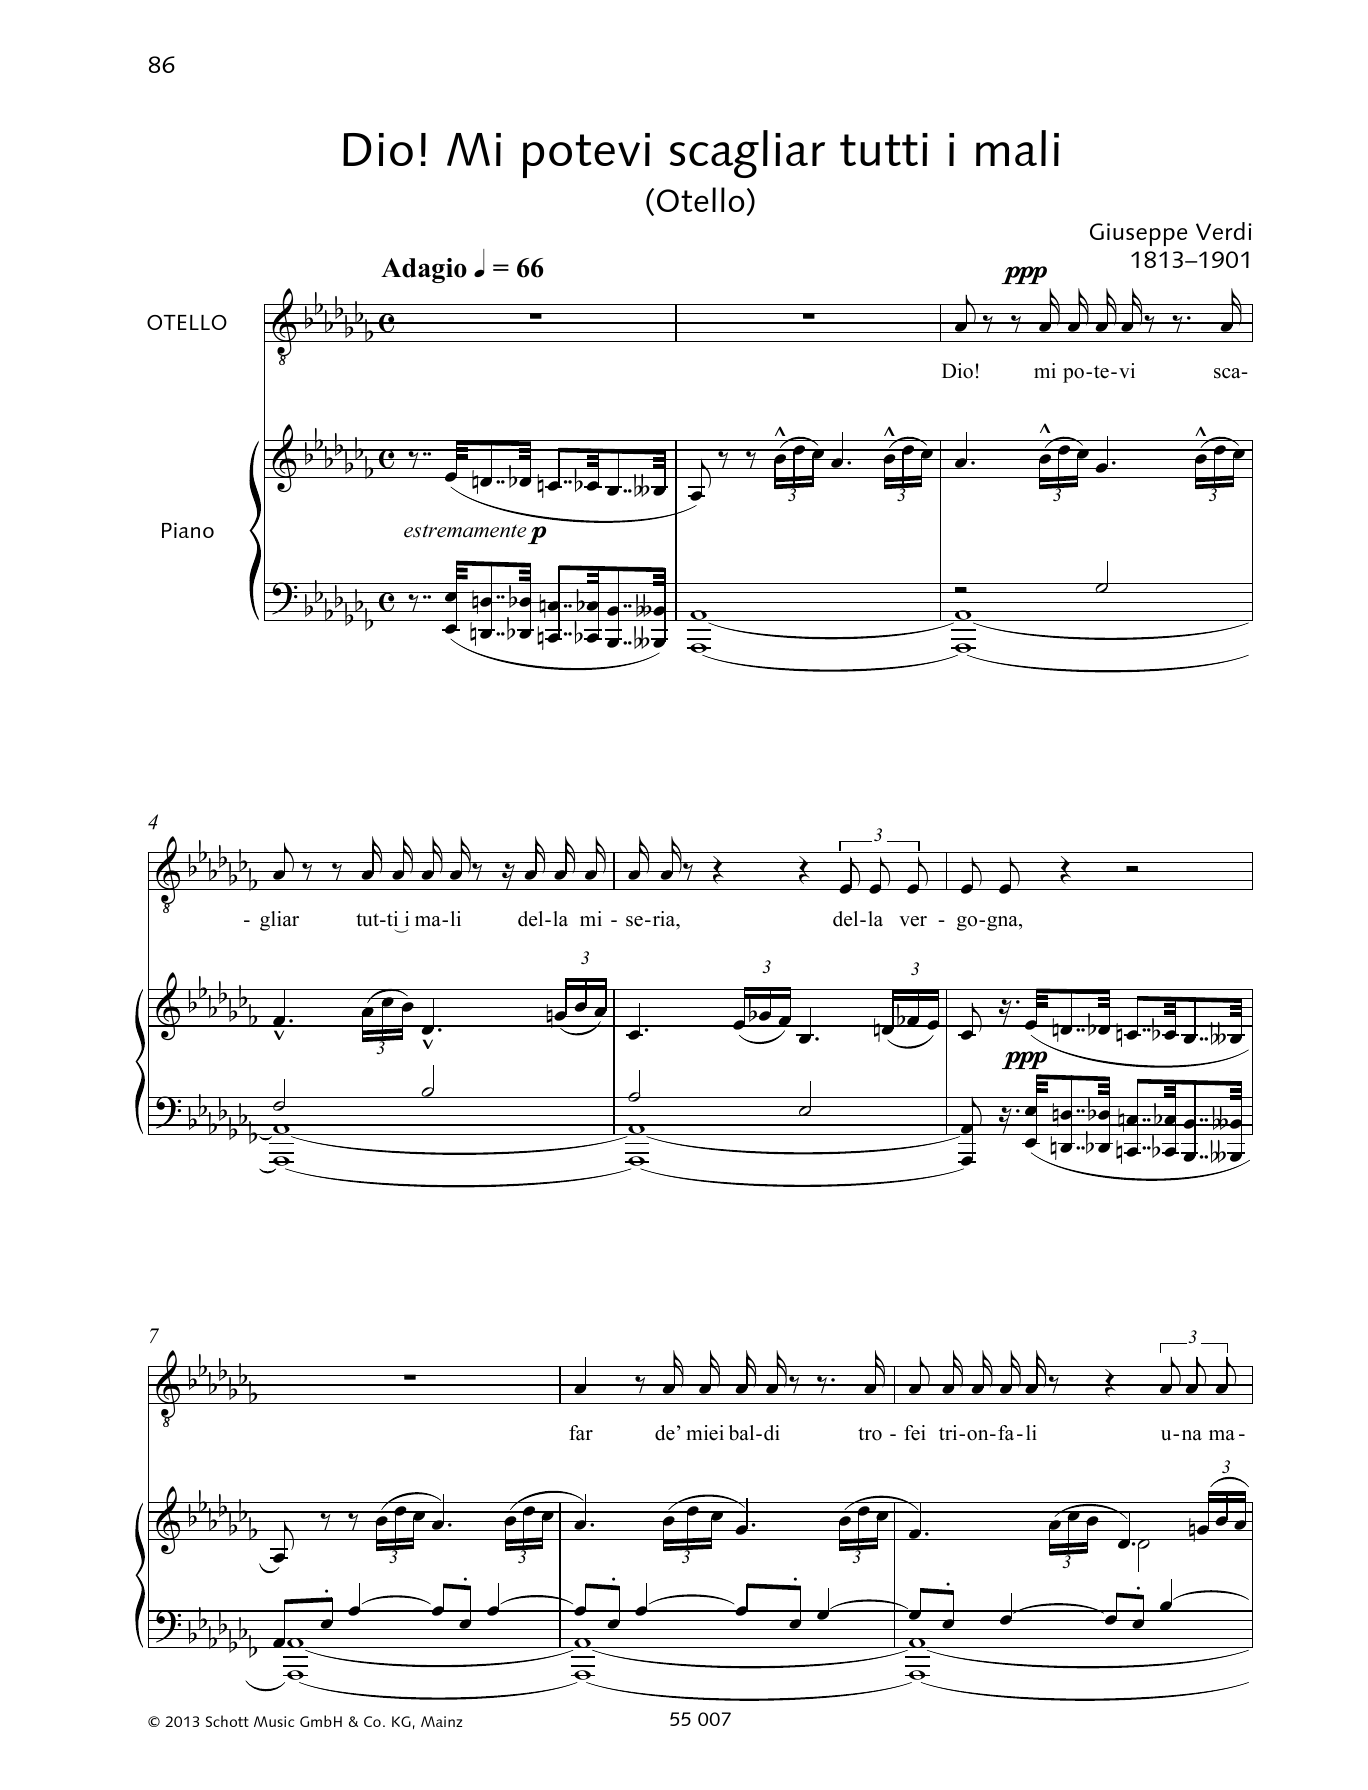 Download Francesca Licciarda Dio! Mi potevi scagliare tutti i mali Sheet Music and learn how to play Piano & Vocal PDF digital score in minutes